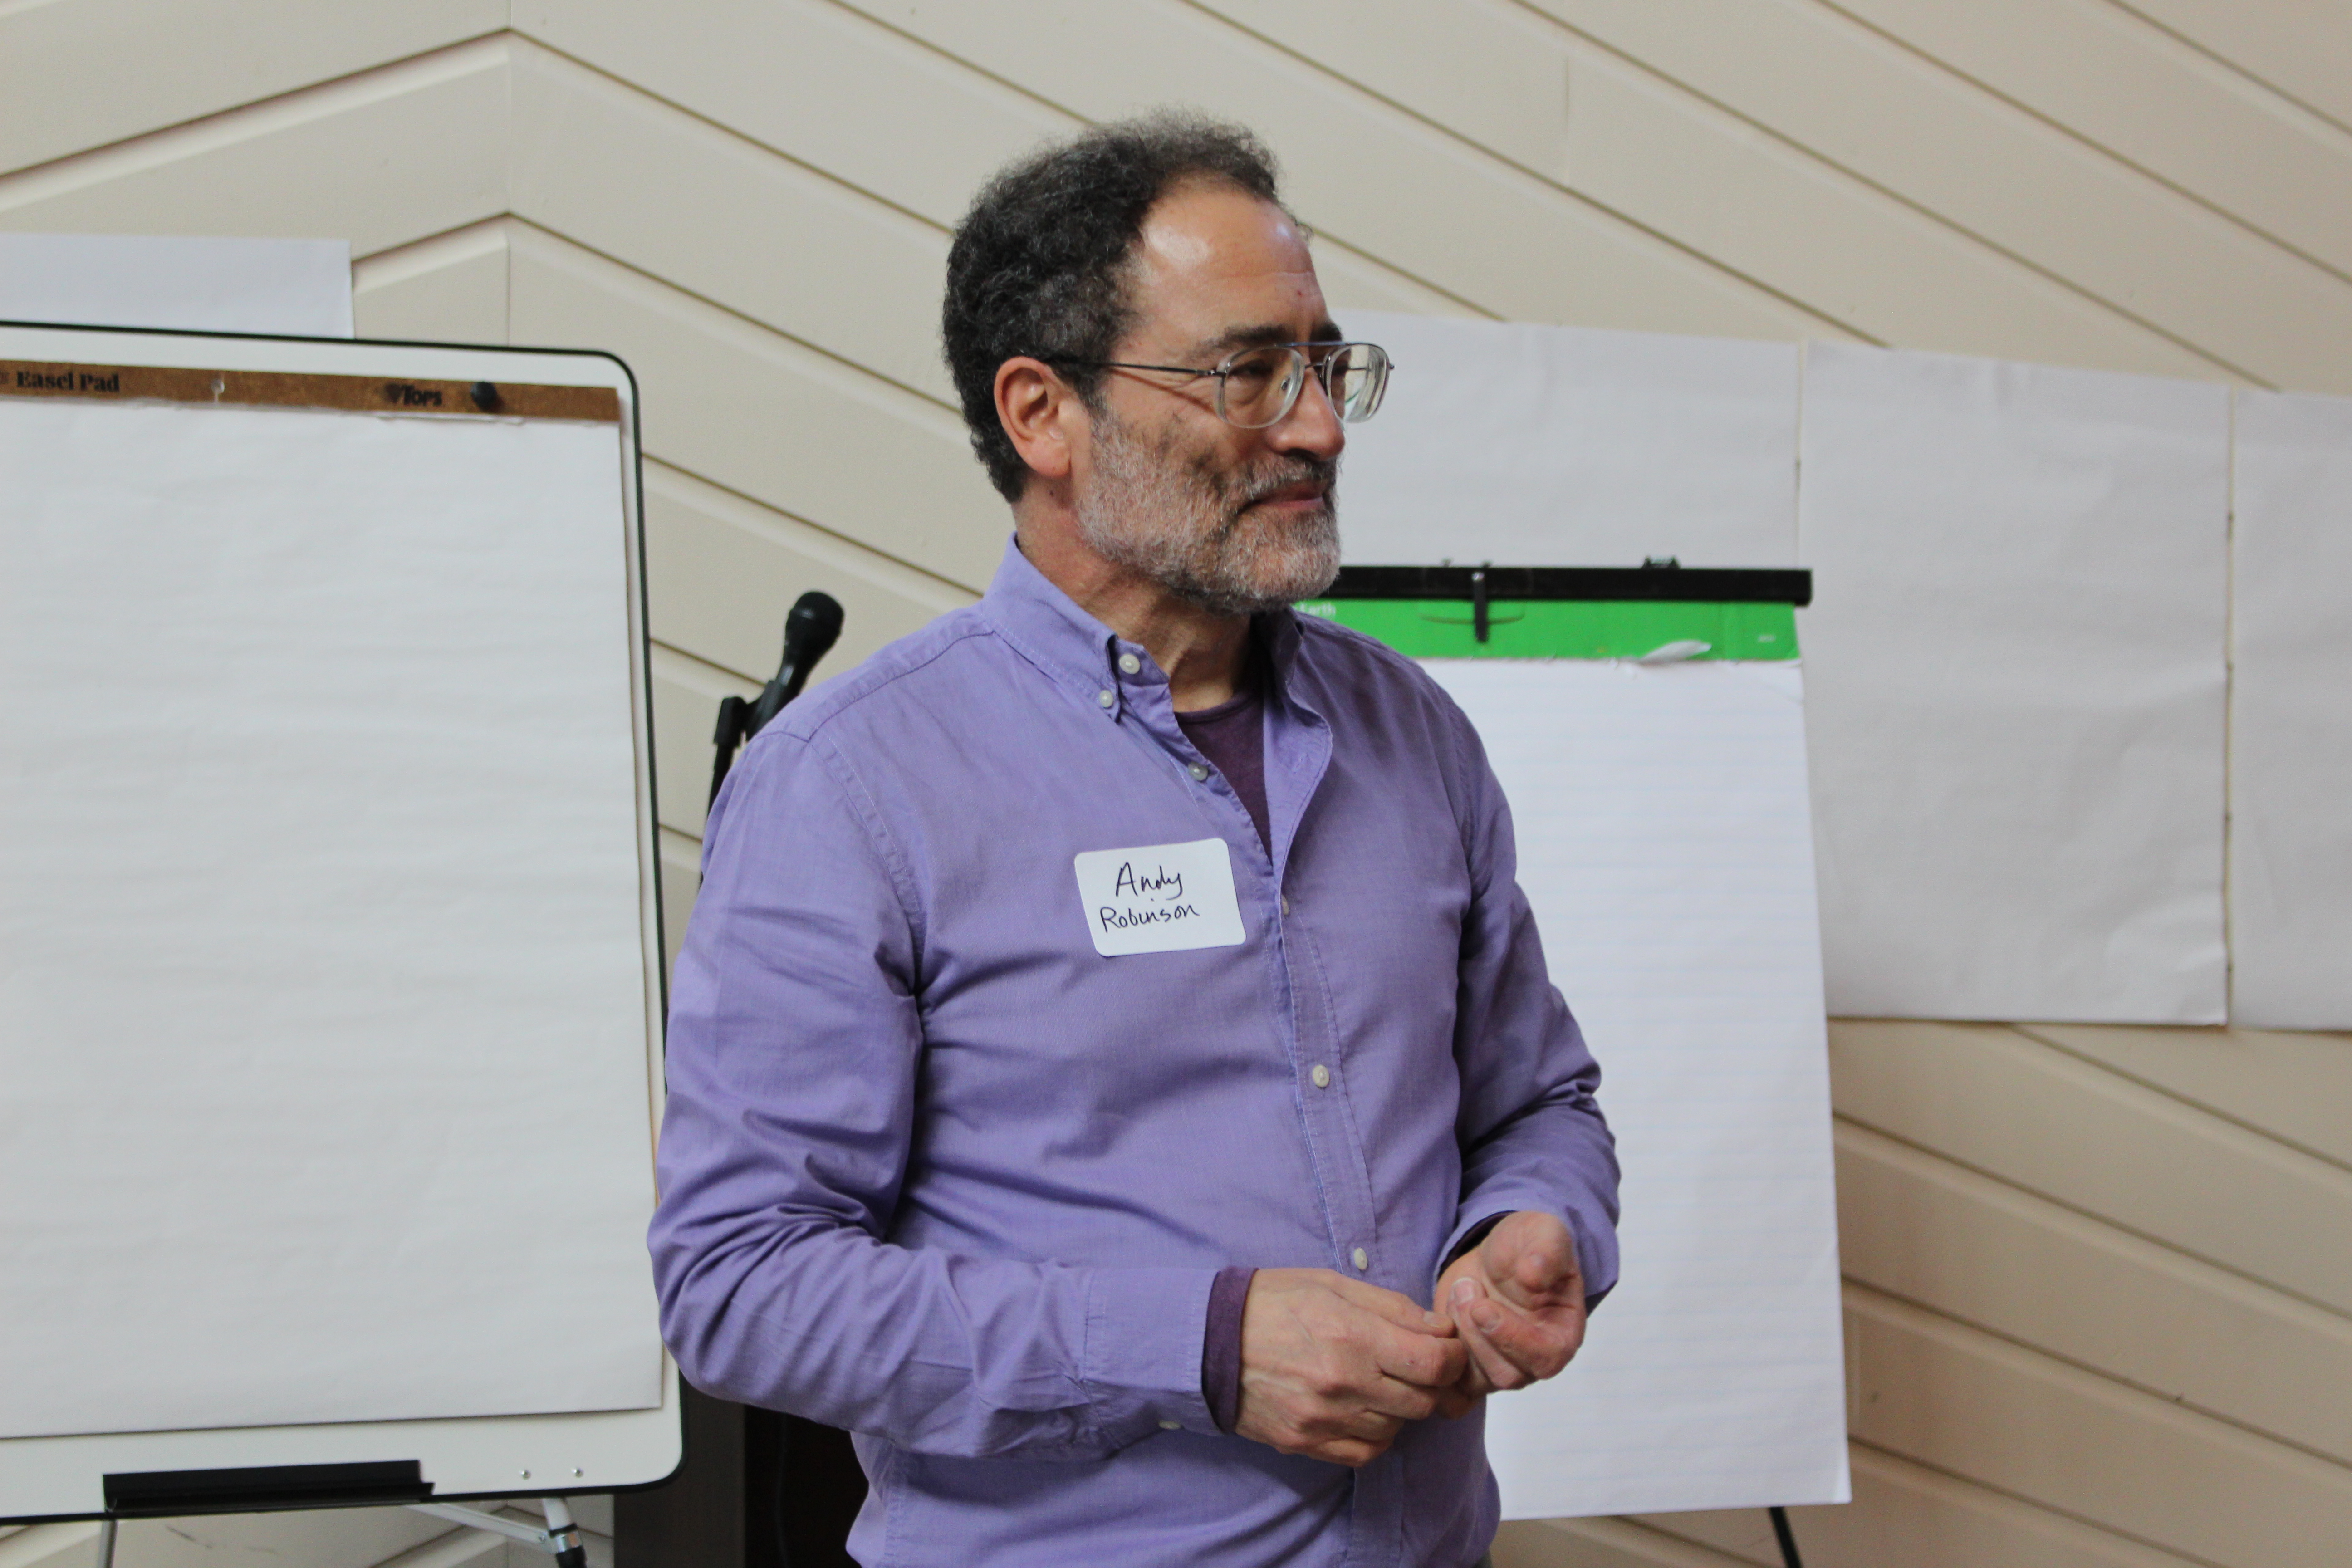 Andy Robinson facilitating an Adirondack Nonprofit Network training